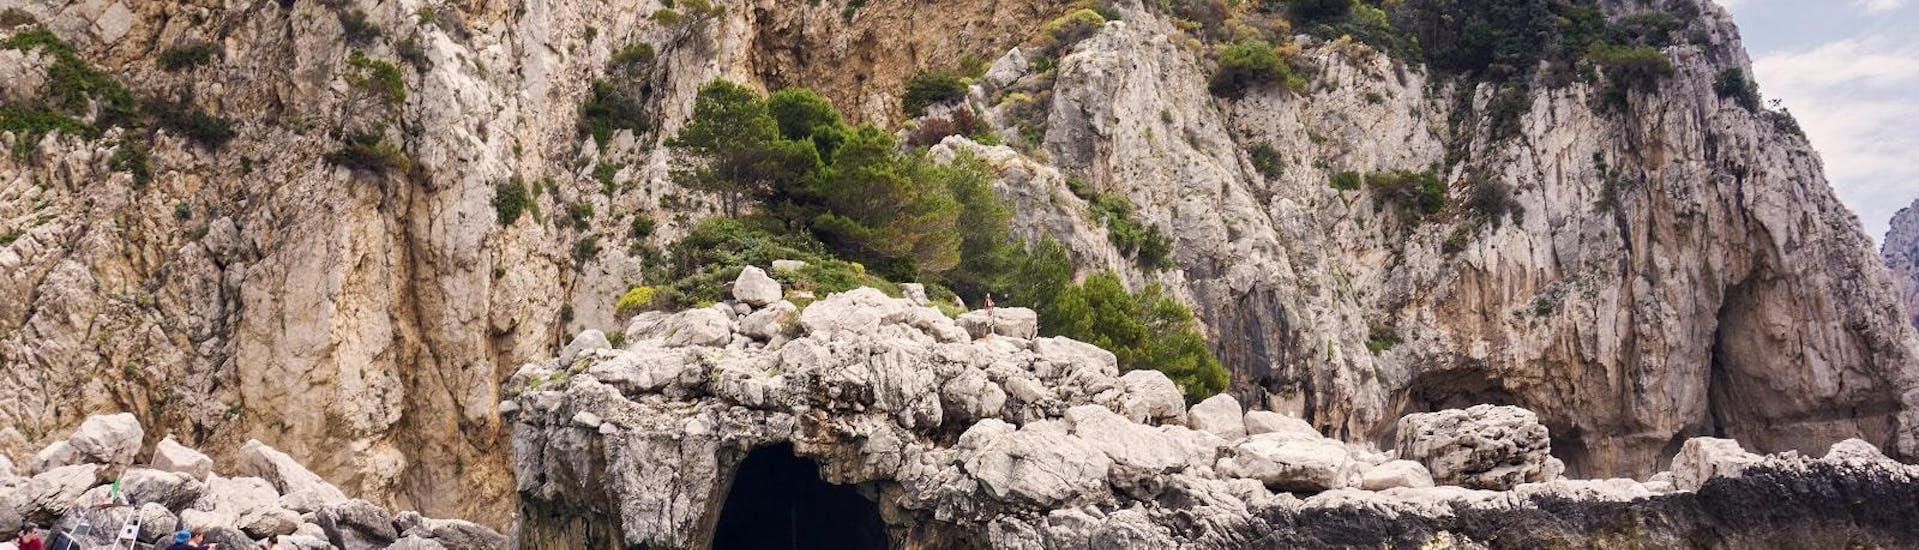 Une vue magnifique d'une grotte depuis le bateau lors de l'excursion en bateau autour de Capri au départ de l'île.